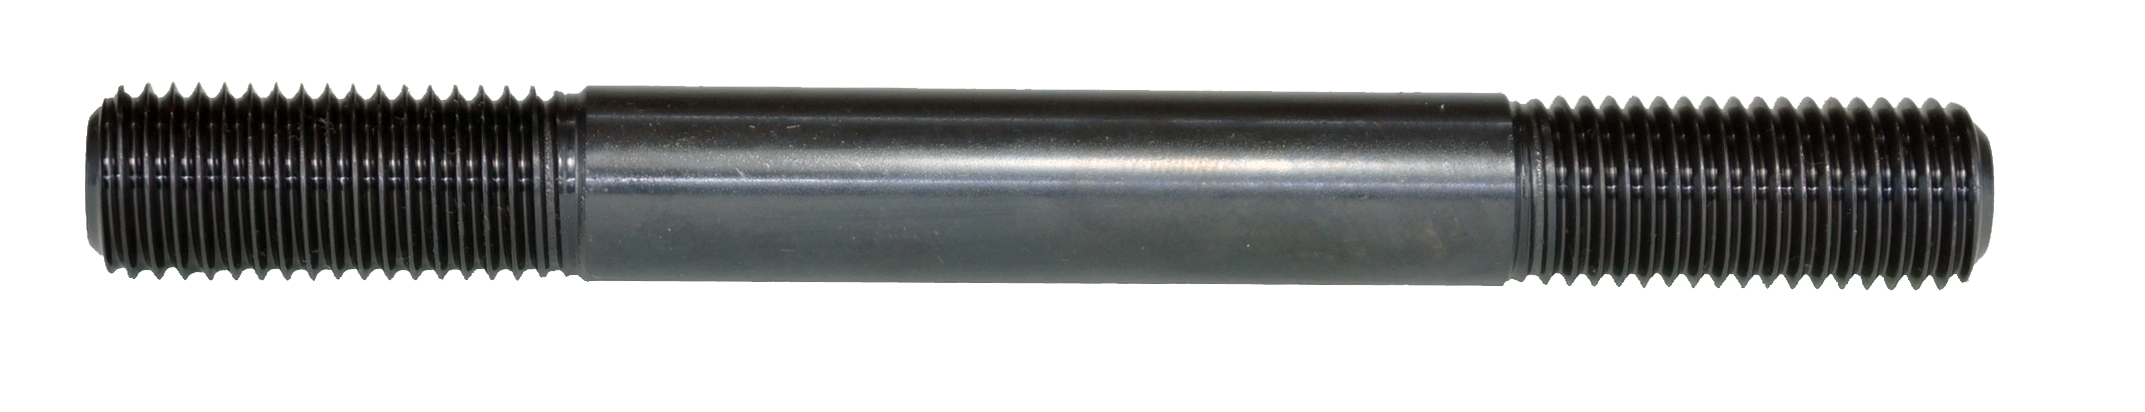 สตัดโบลท์ (ขนาดนิ้ว) (SBW-550)